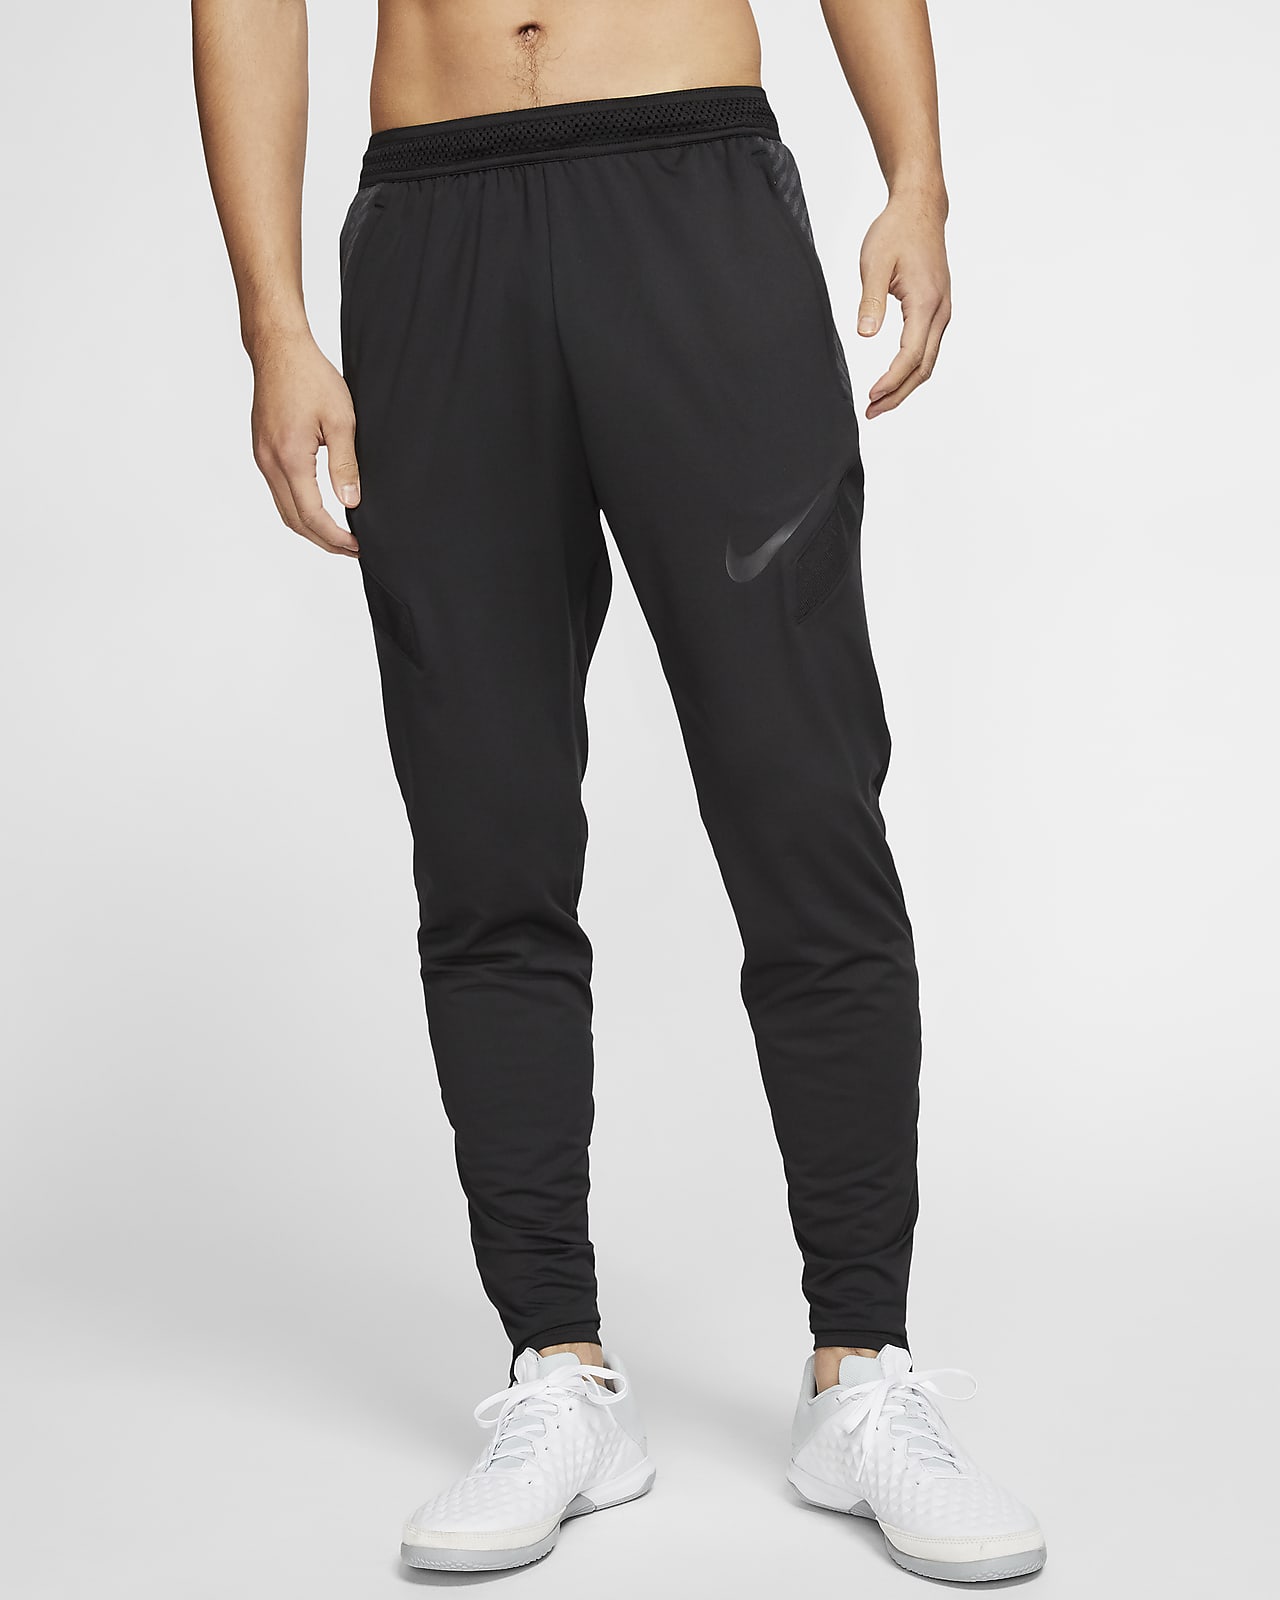 Pantalones de fútbol para hombre Nike Dri-FIT Strike. Nike.com